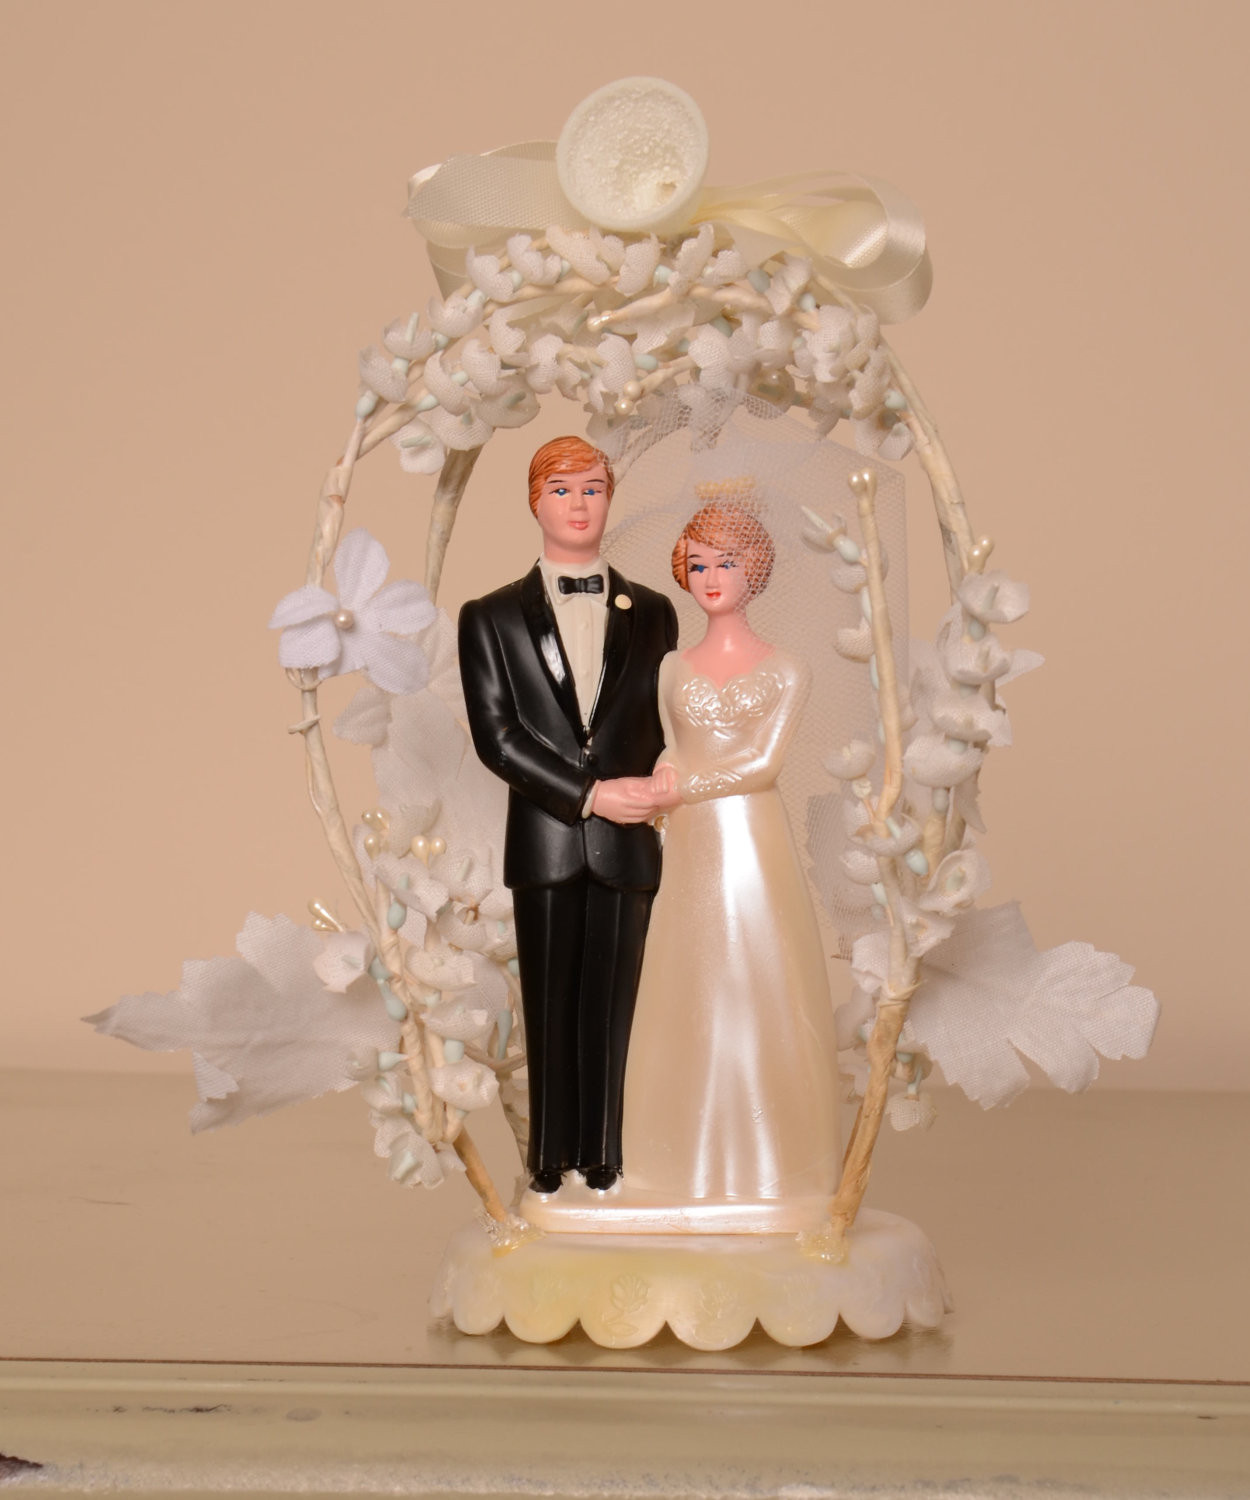 Vintage Wedding Cake Topper
 Vintage Bride & Groom Wedding Cake Topper